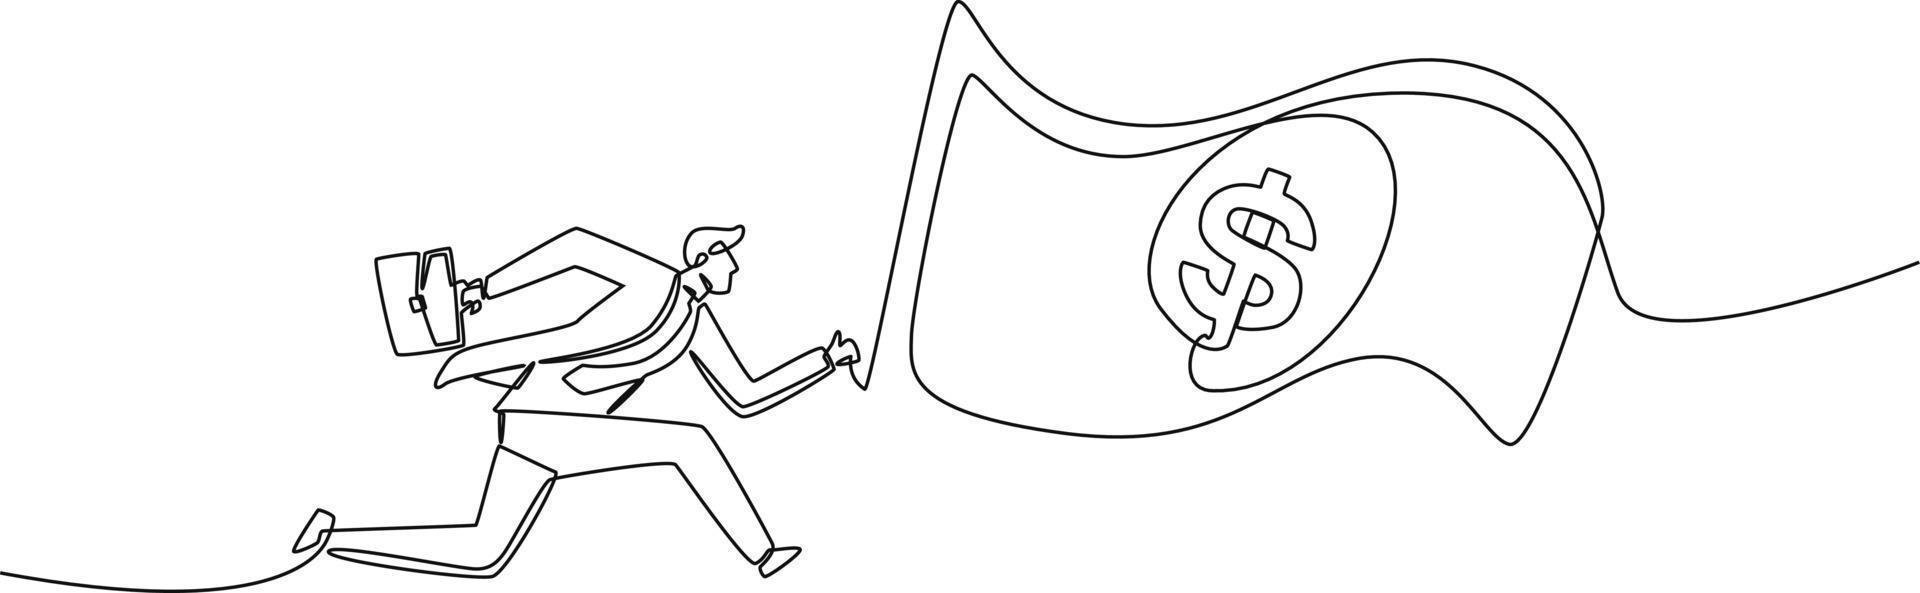 dessin en ligne continu d'un homme d'affaires avec une valise qui court et attrape de l'argent. financement et investissement. illustration graphique vectorielle de dessin à une seule ligne. vecteur